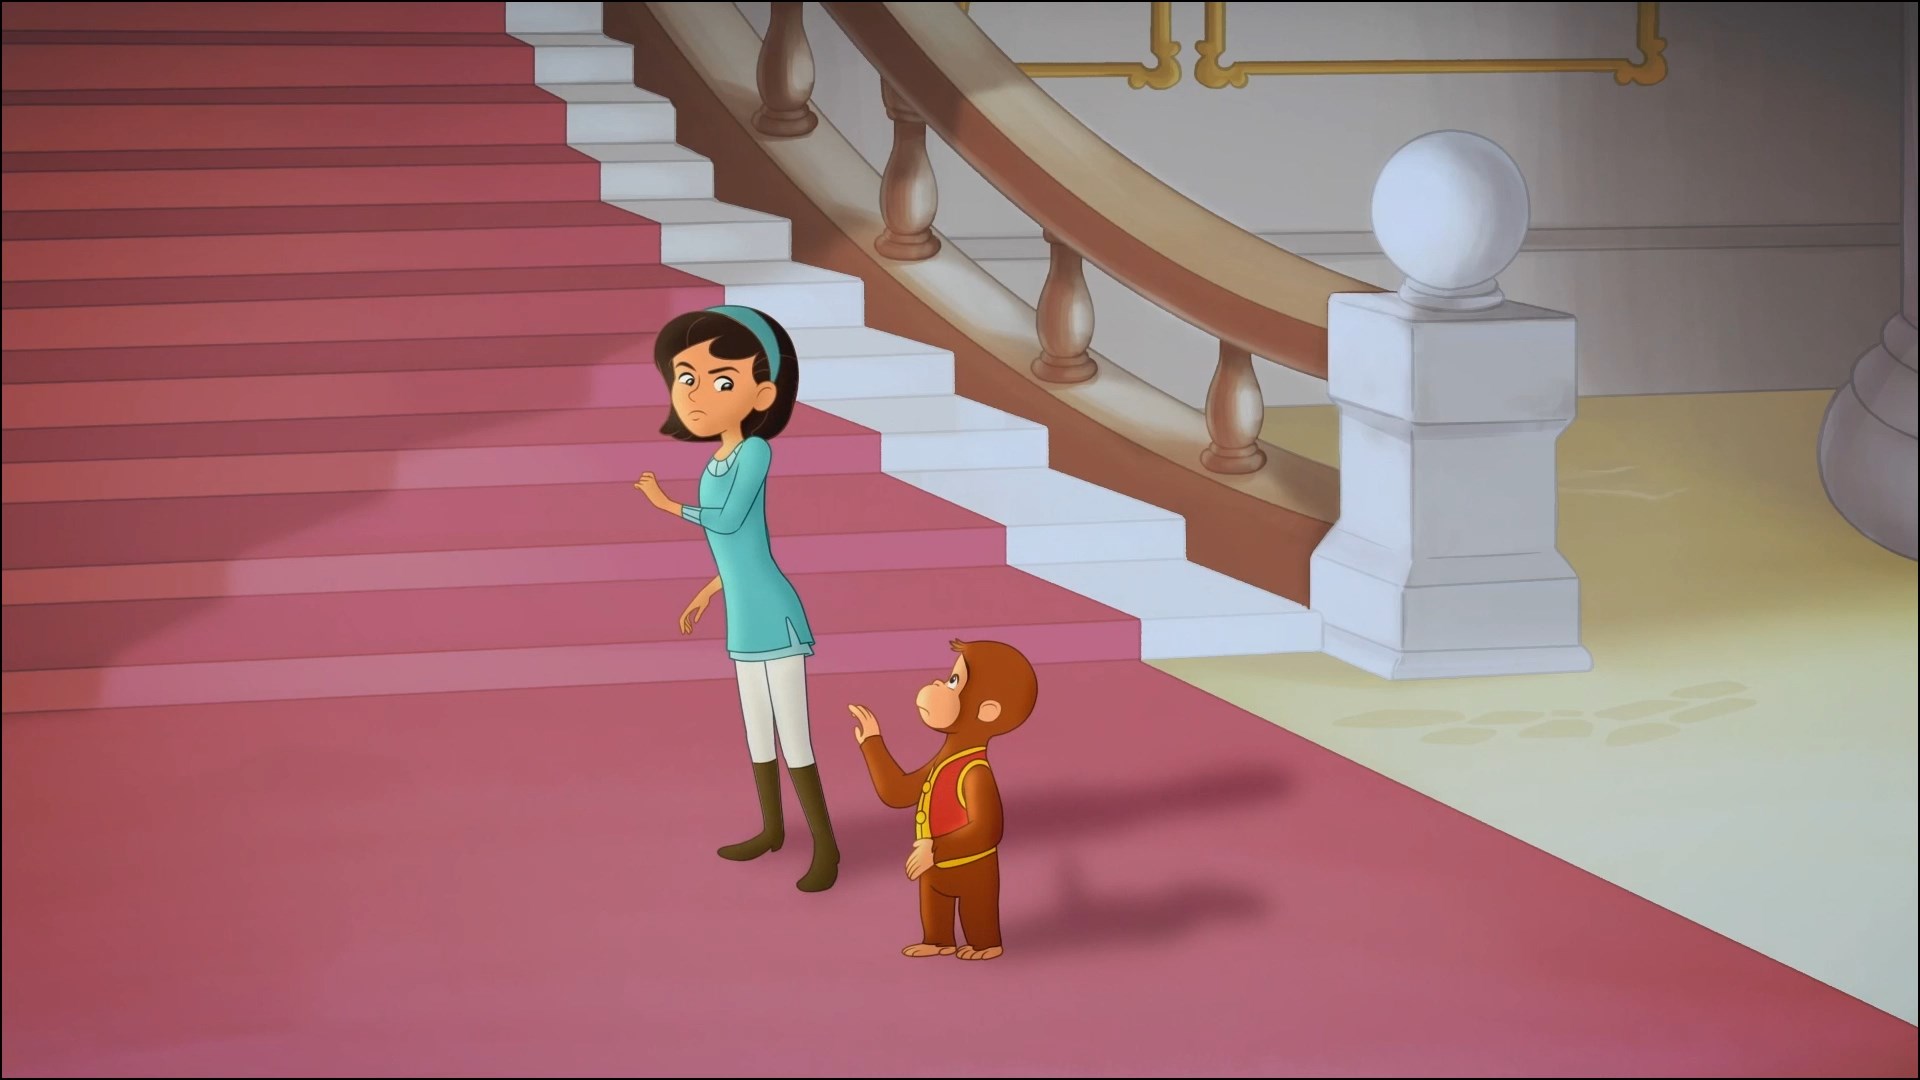 دانلود انیمیشن Curious George: Royal Monkey 2019 (جرج کنجکاو: میمون سلطنتی) دوبله فارسی